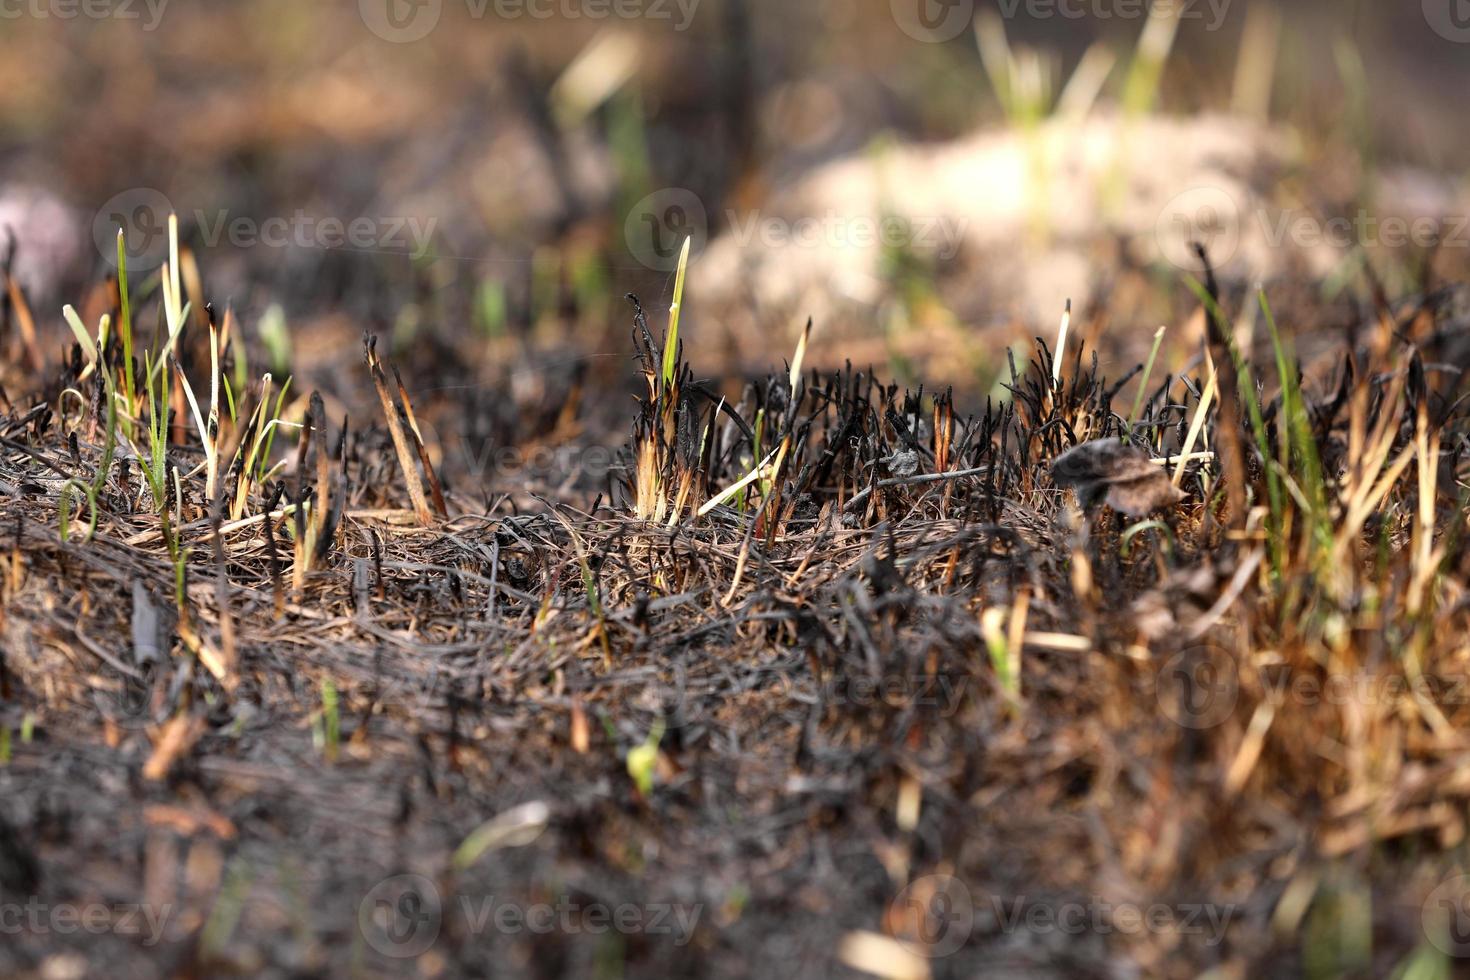 verbranntes Gras vom Feuer. brauner natürlicher hintergrund. verbranntes land, gras und blätter im frühlingsholz. horizontale Farbfotografie. selektiver Fokus foto